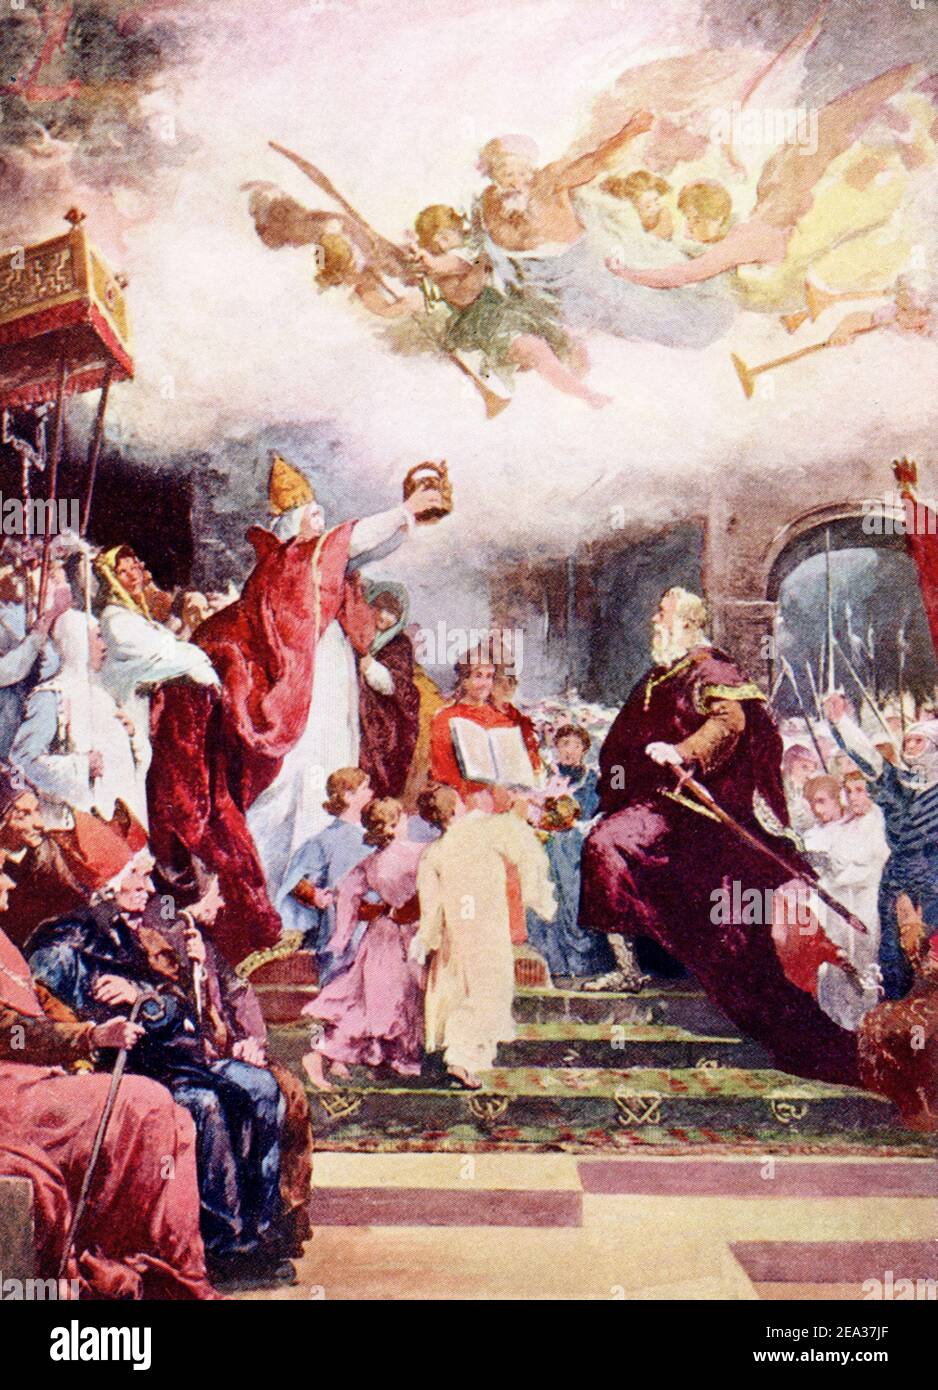 Am Weihnachtstag im Jahre 800 n. Chr. wurde Karl der große, König der Franken und Teil der karolingischen Linie, von Papst Leo III. (795-816) zum Heiligen Römischen Kaiser gekrönt. Die Krönung fand während der Messe in der Basilika St. Peter in Rom statt. Die Krönung Karls des Großen schuf das Heilige Römische Reich, das bis 1806 Bestand hatte. Stockfoto